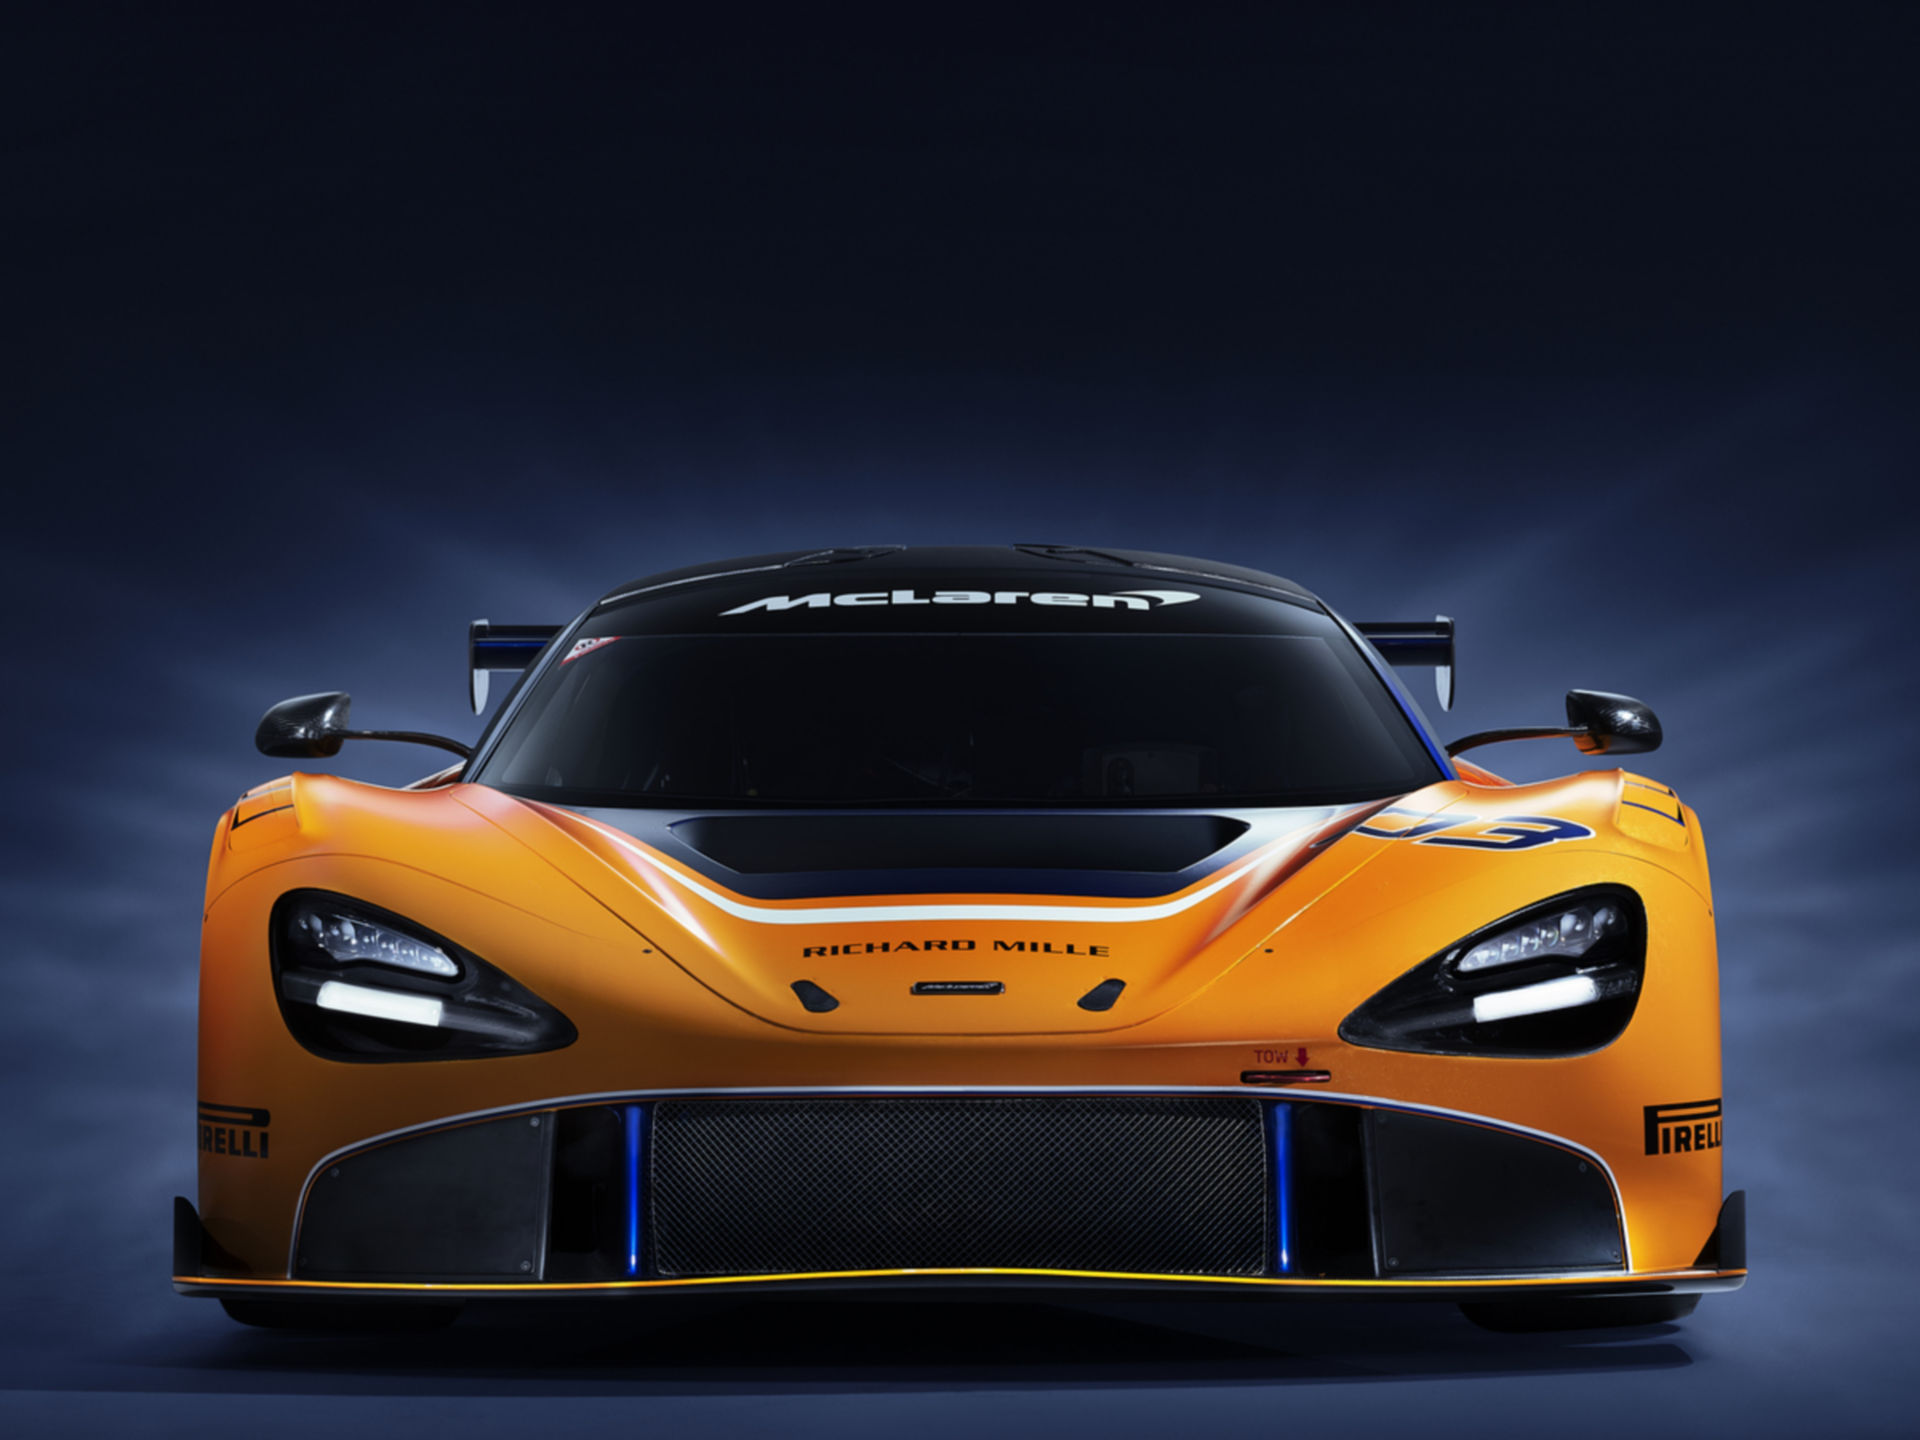 McLaren Customer Racing - Models, McLaren Automotive